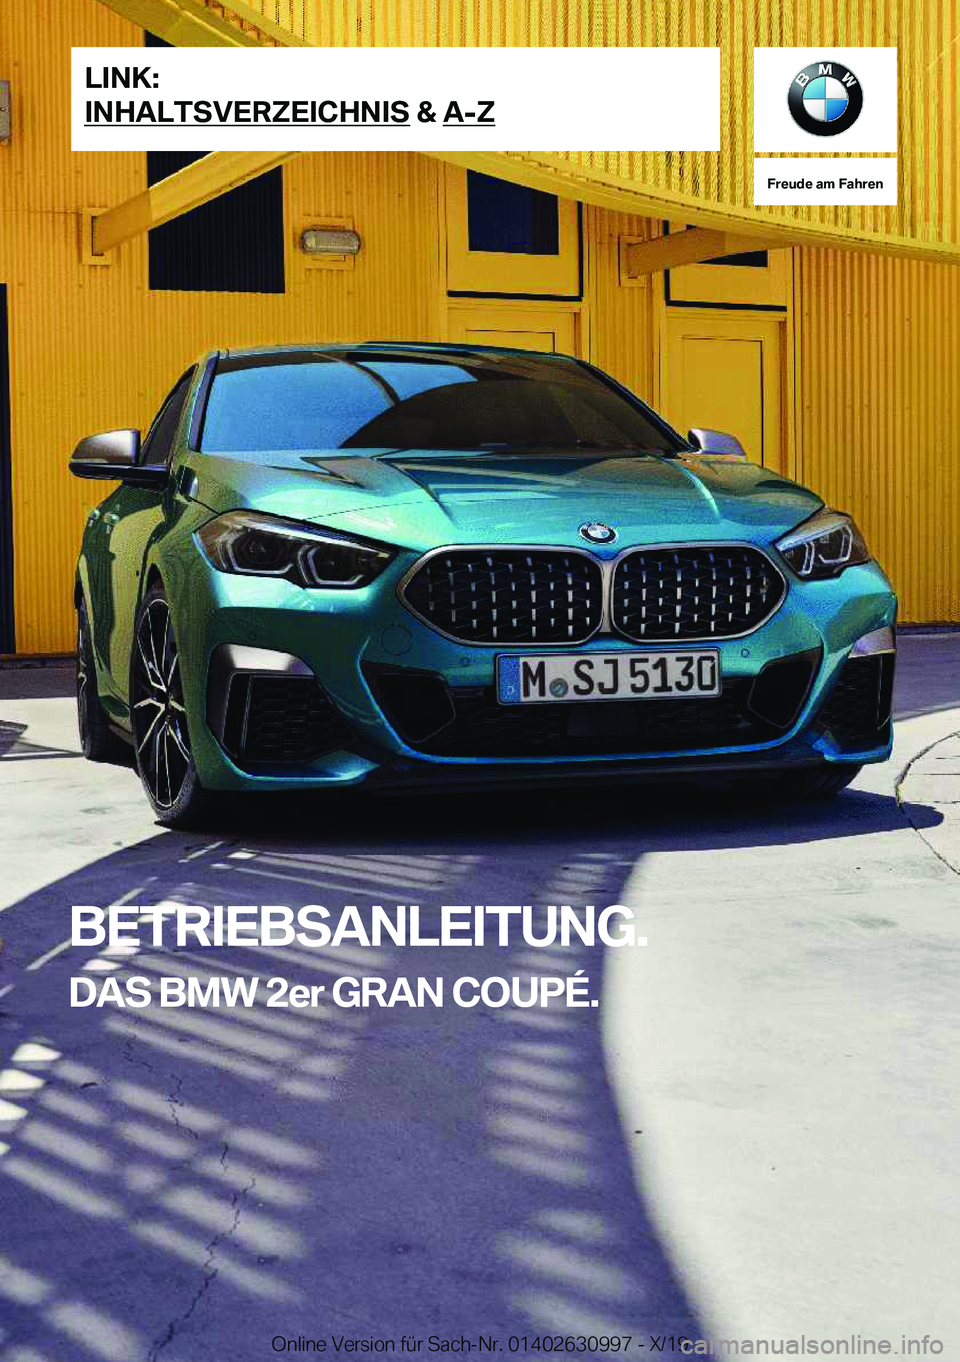 BMW 2 SERIES GRAN COUPE 2020  Betriebsanleitungen (in German) �F�r�e�u�d�e��a�m��F�a�h�r�e�n
�B�E�T�R�I�E�B�S�A�N�L�E�I�T�U�N�G�.�D�A�S��B�M�W��2�e�r��G�R�A�N��C�O�U�P�